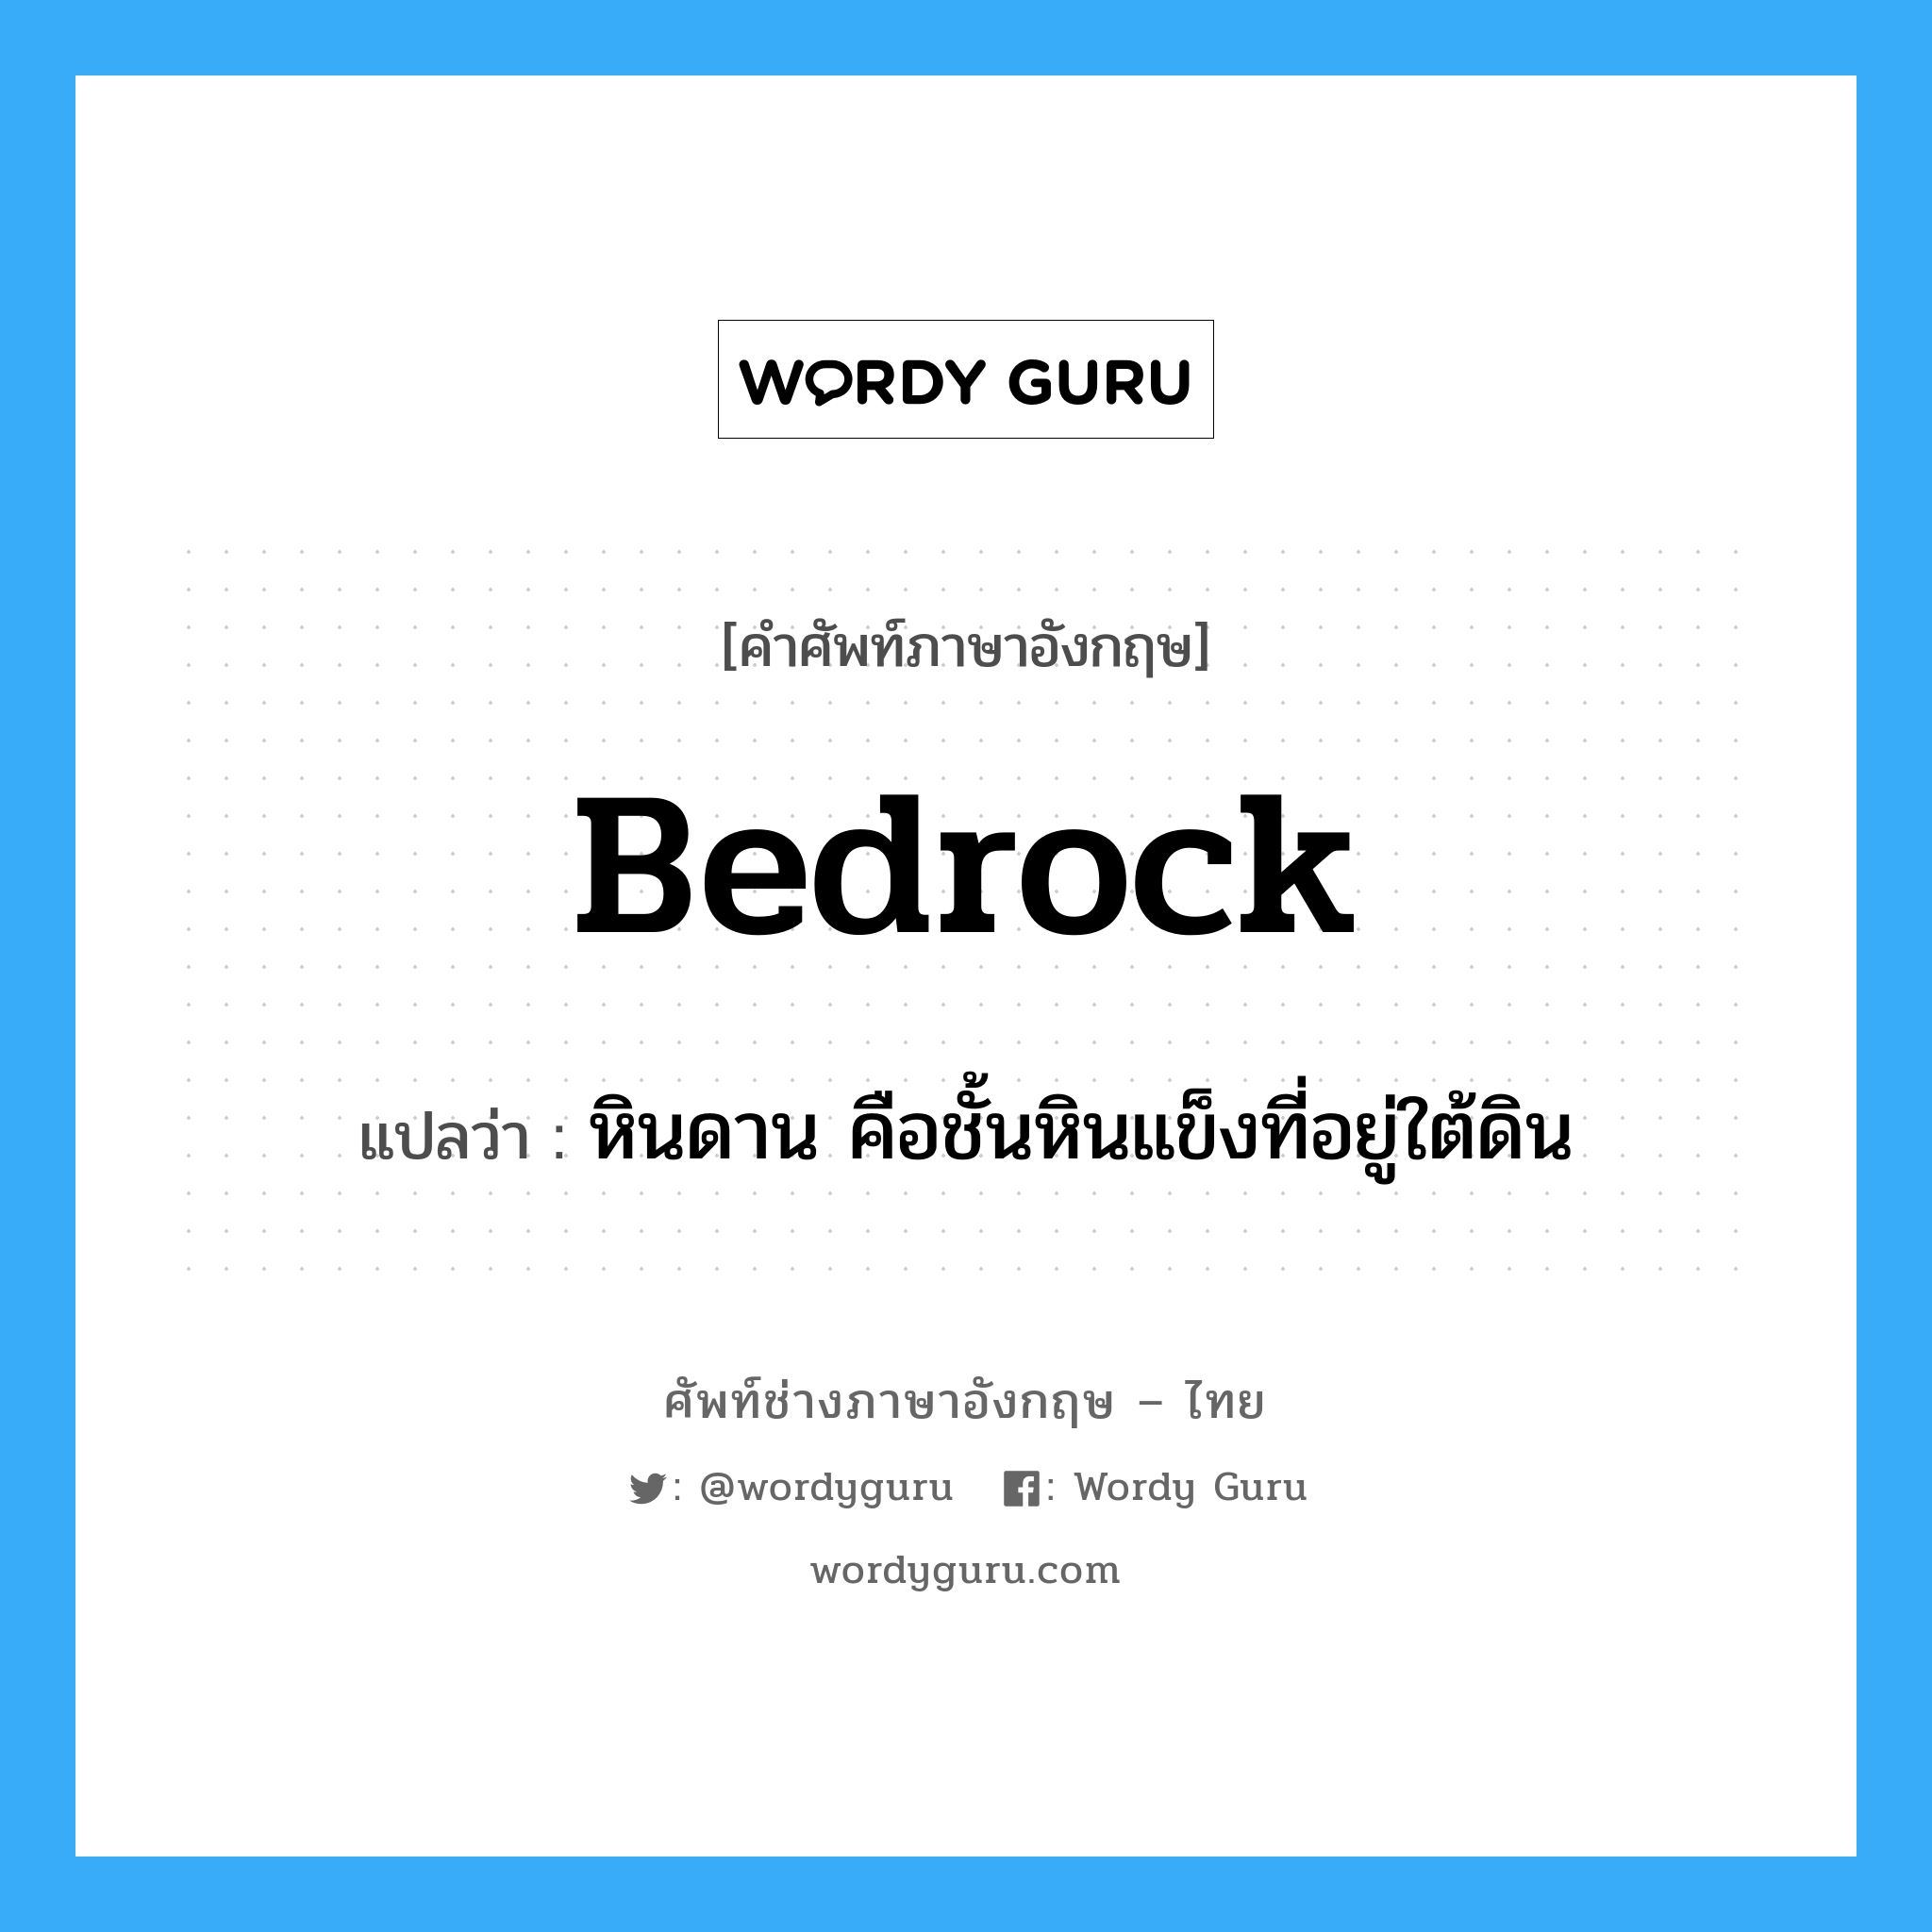 Bedrock แปลว่า?, คำศัพท์ช่างภาษาอังกฤษ - ไทย Bedrock คำศัพท์ภาษาอังกฤษ Bedrock แปลว่า หินดาน คือชั้นหินแข็งที่อยู่ใต้ดิน